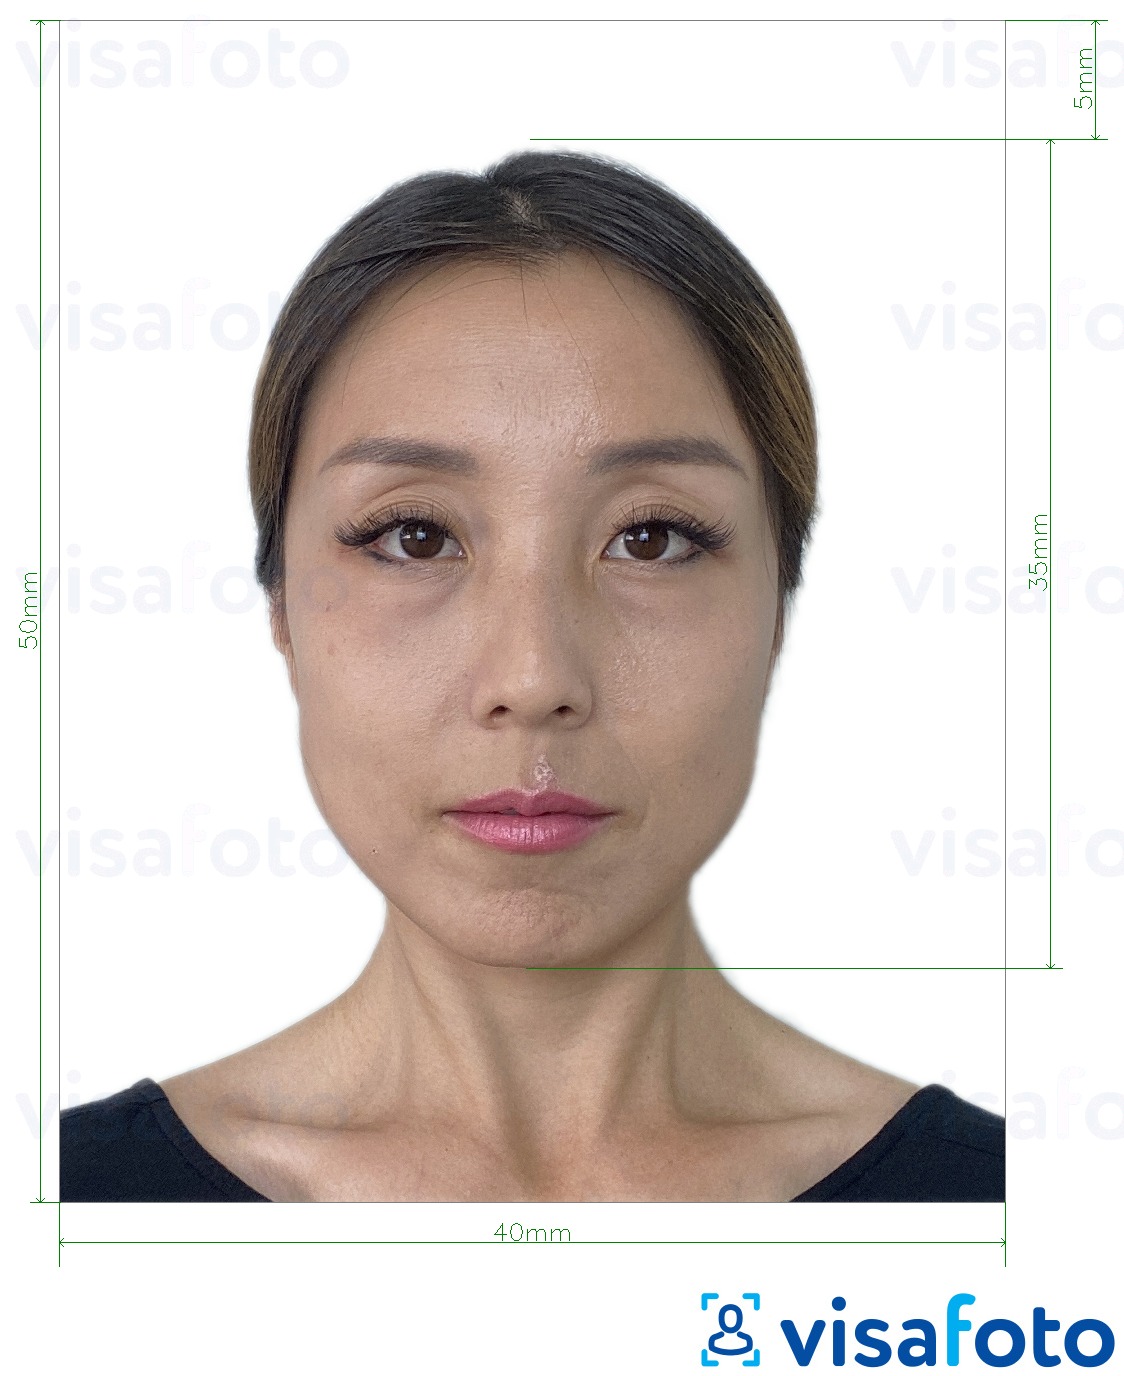 Przykład zdjęcia dla Dowód osobisty w Hongkongu 4x5 cm z podaniem dokładnego rozmiaru.